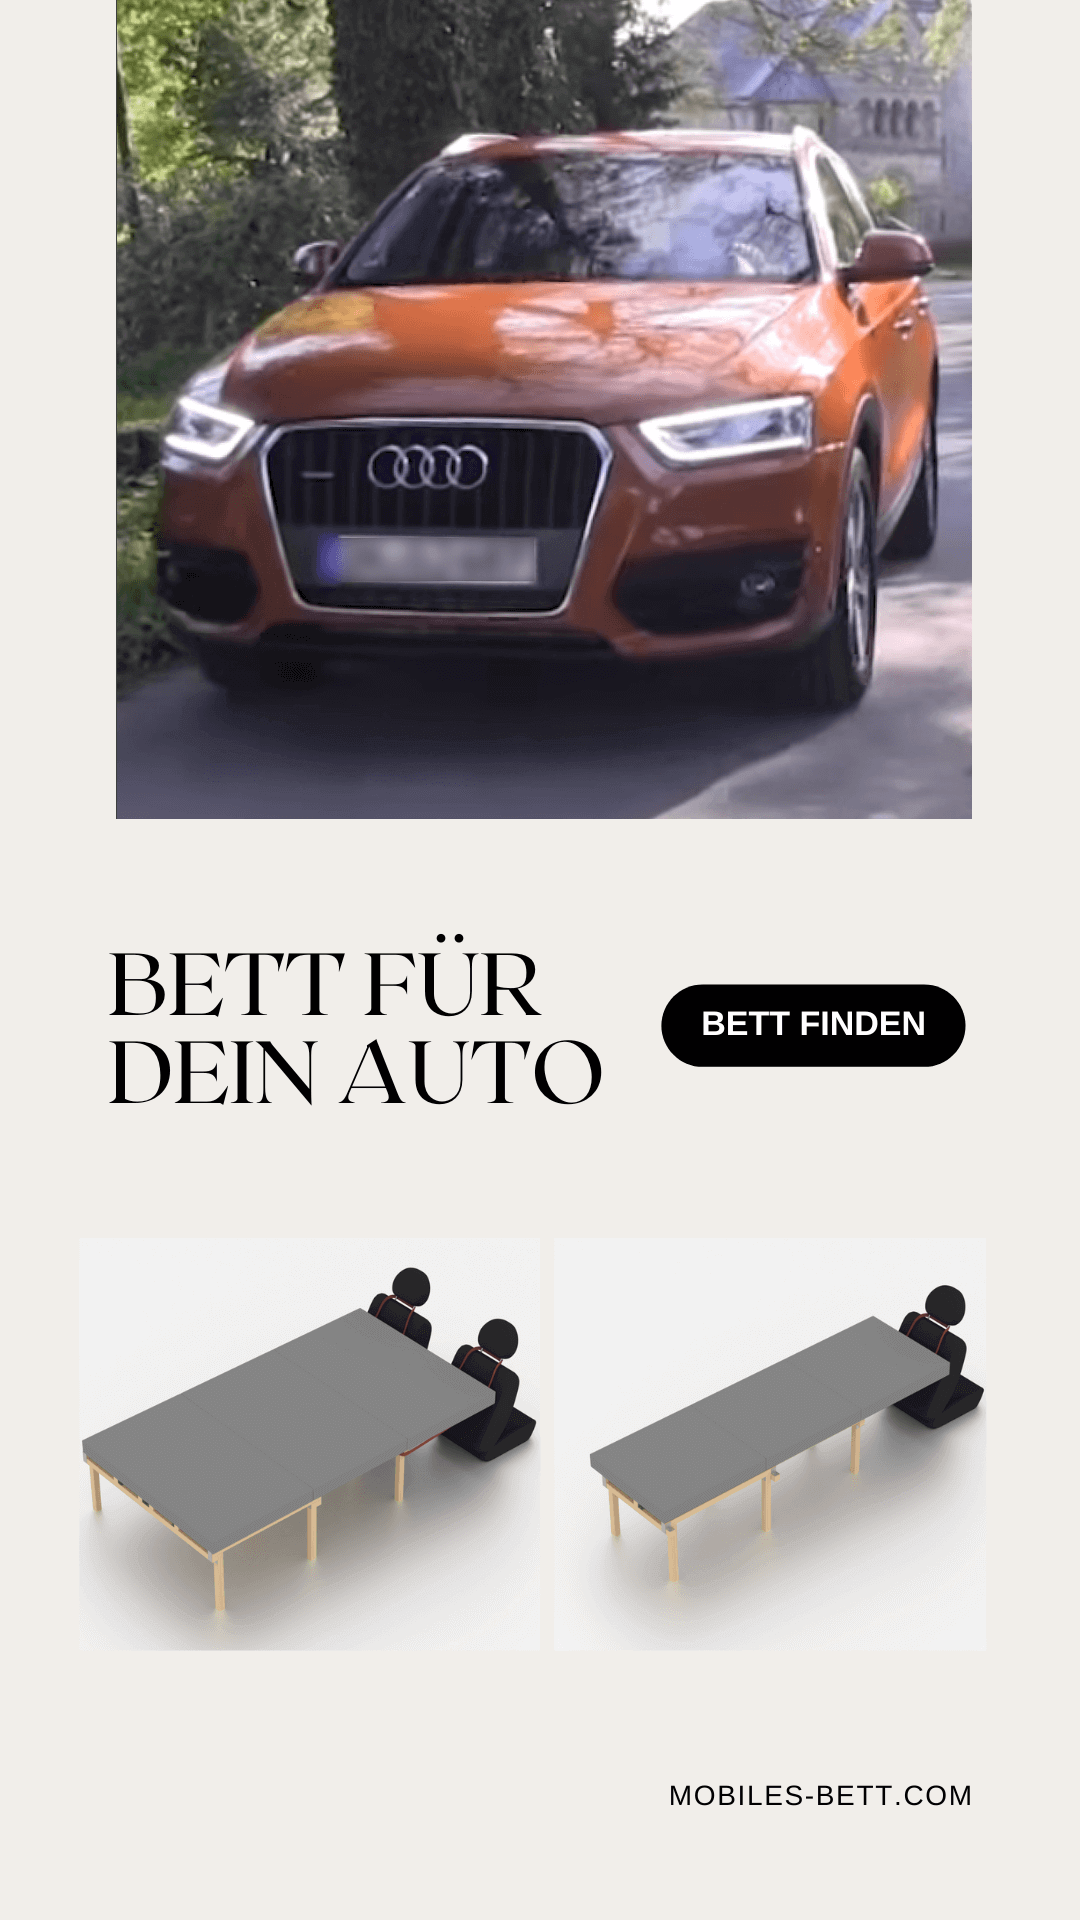 Bauplan und Anleitung - Mobiles Bett für Audi Q3 8U selber bauen - becomePro